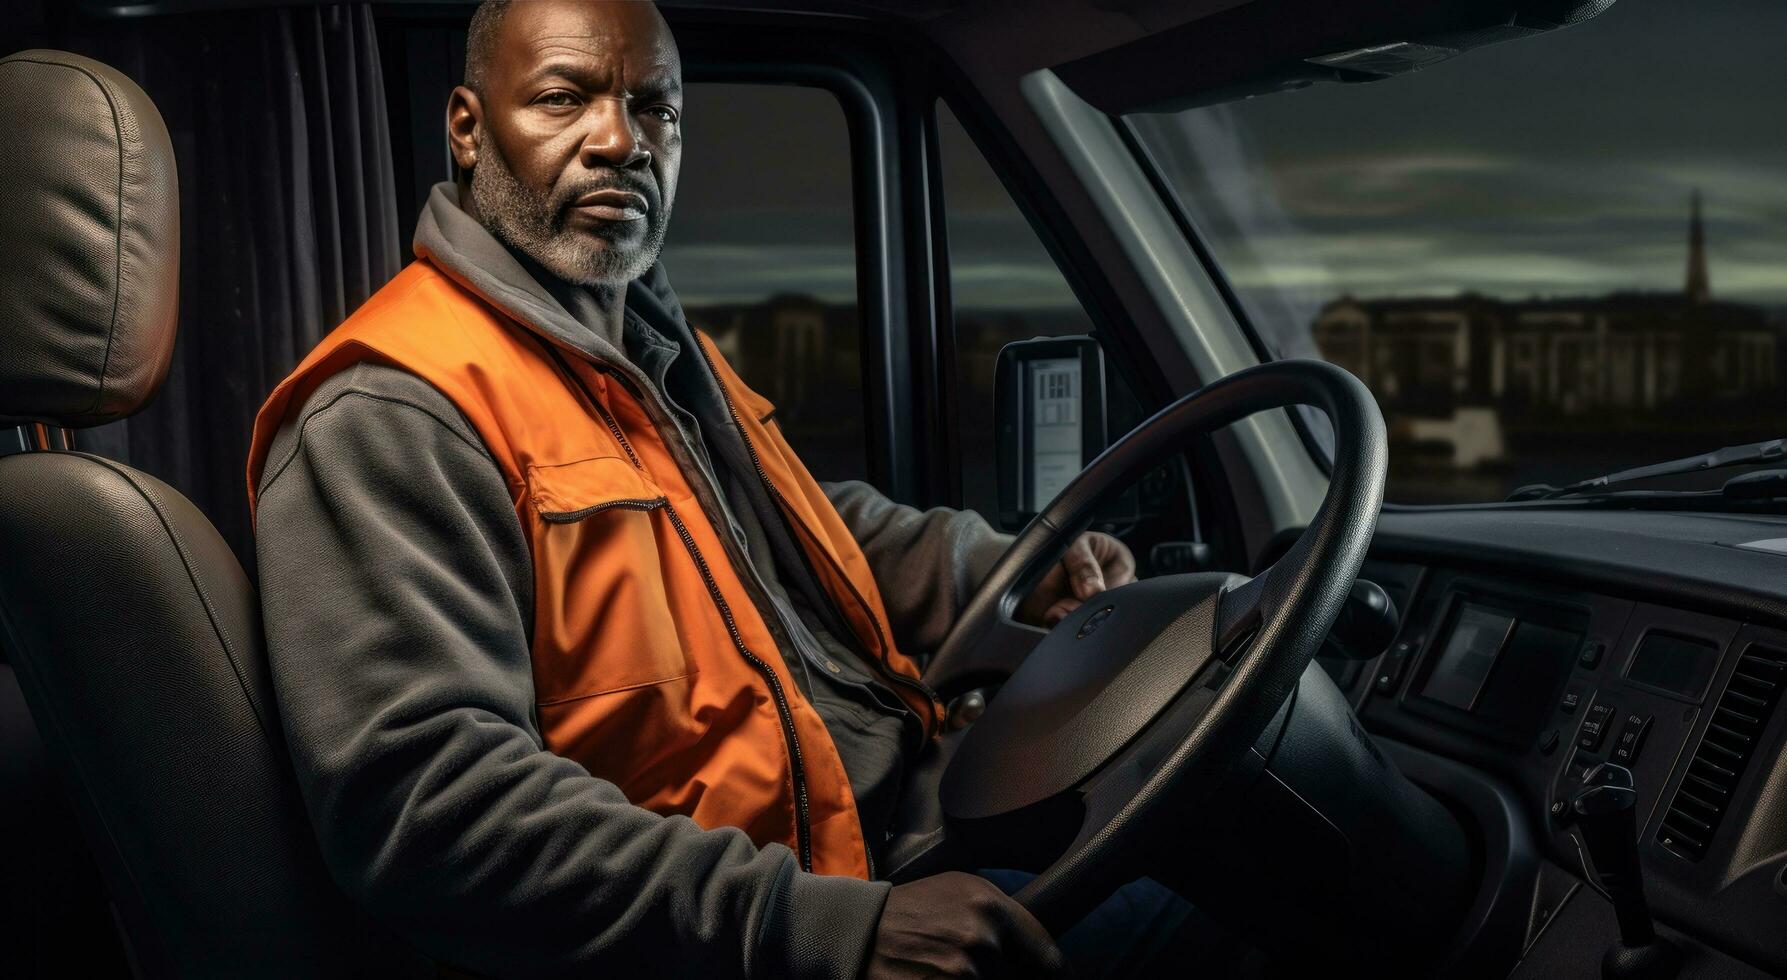 en lastbil förare är körning en lastbil med ett orange väst foto